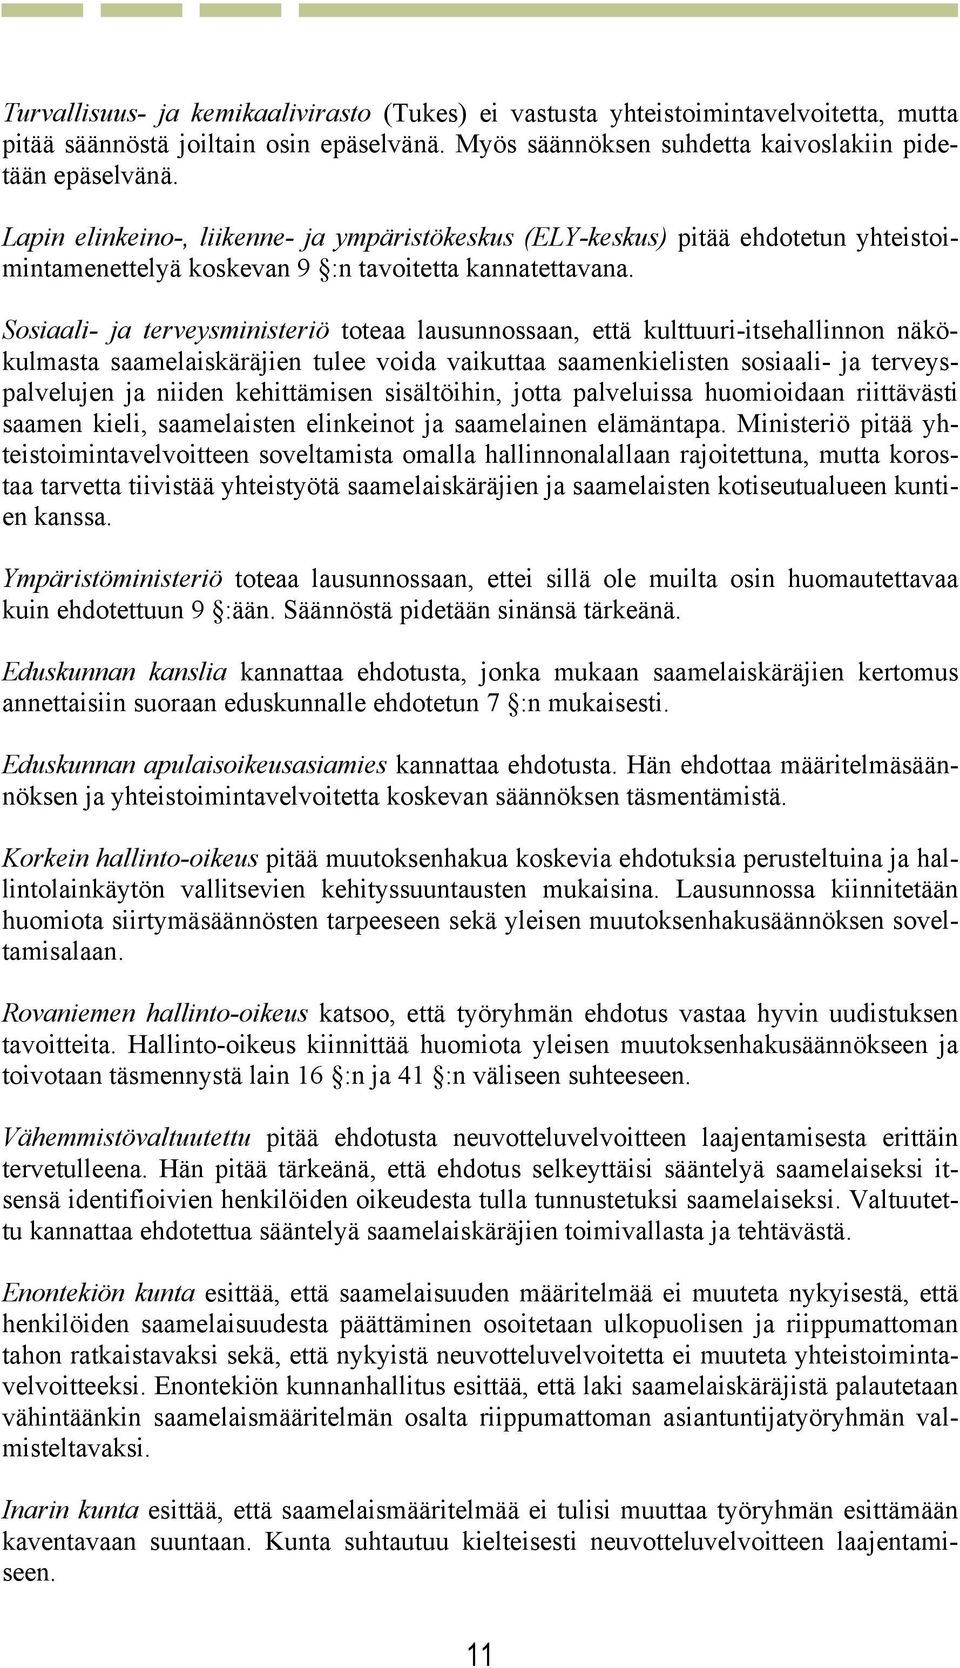 Sosiaali- ja terveysministeriö toteaa lausunnossaan, että kulttuuri-itsehallinnon näkökulmasta saamelaiskäräjien tulee voida vaikuttaa saamenkielisten sosiaali- ja terveyspalvelujen ja niiden